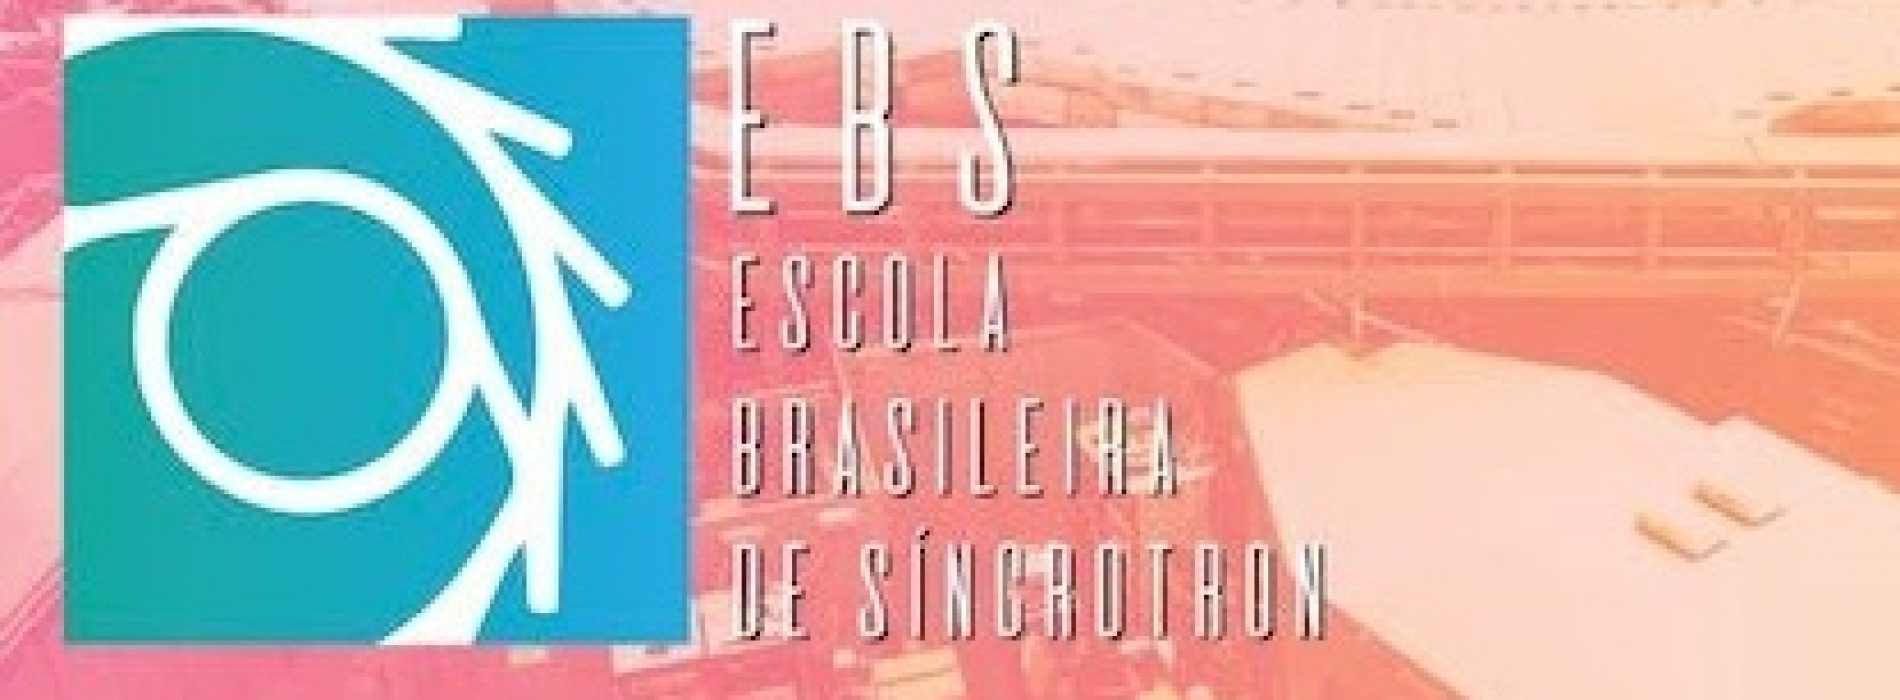 Abertura das inscrições: 1ª Escola Brasileira de Síncrotron